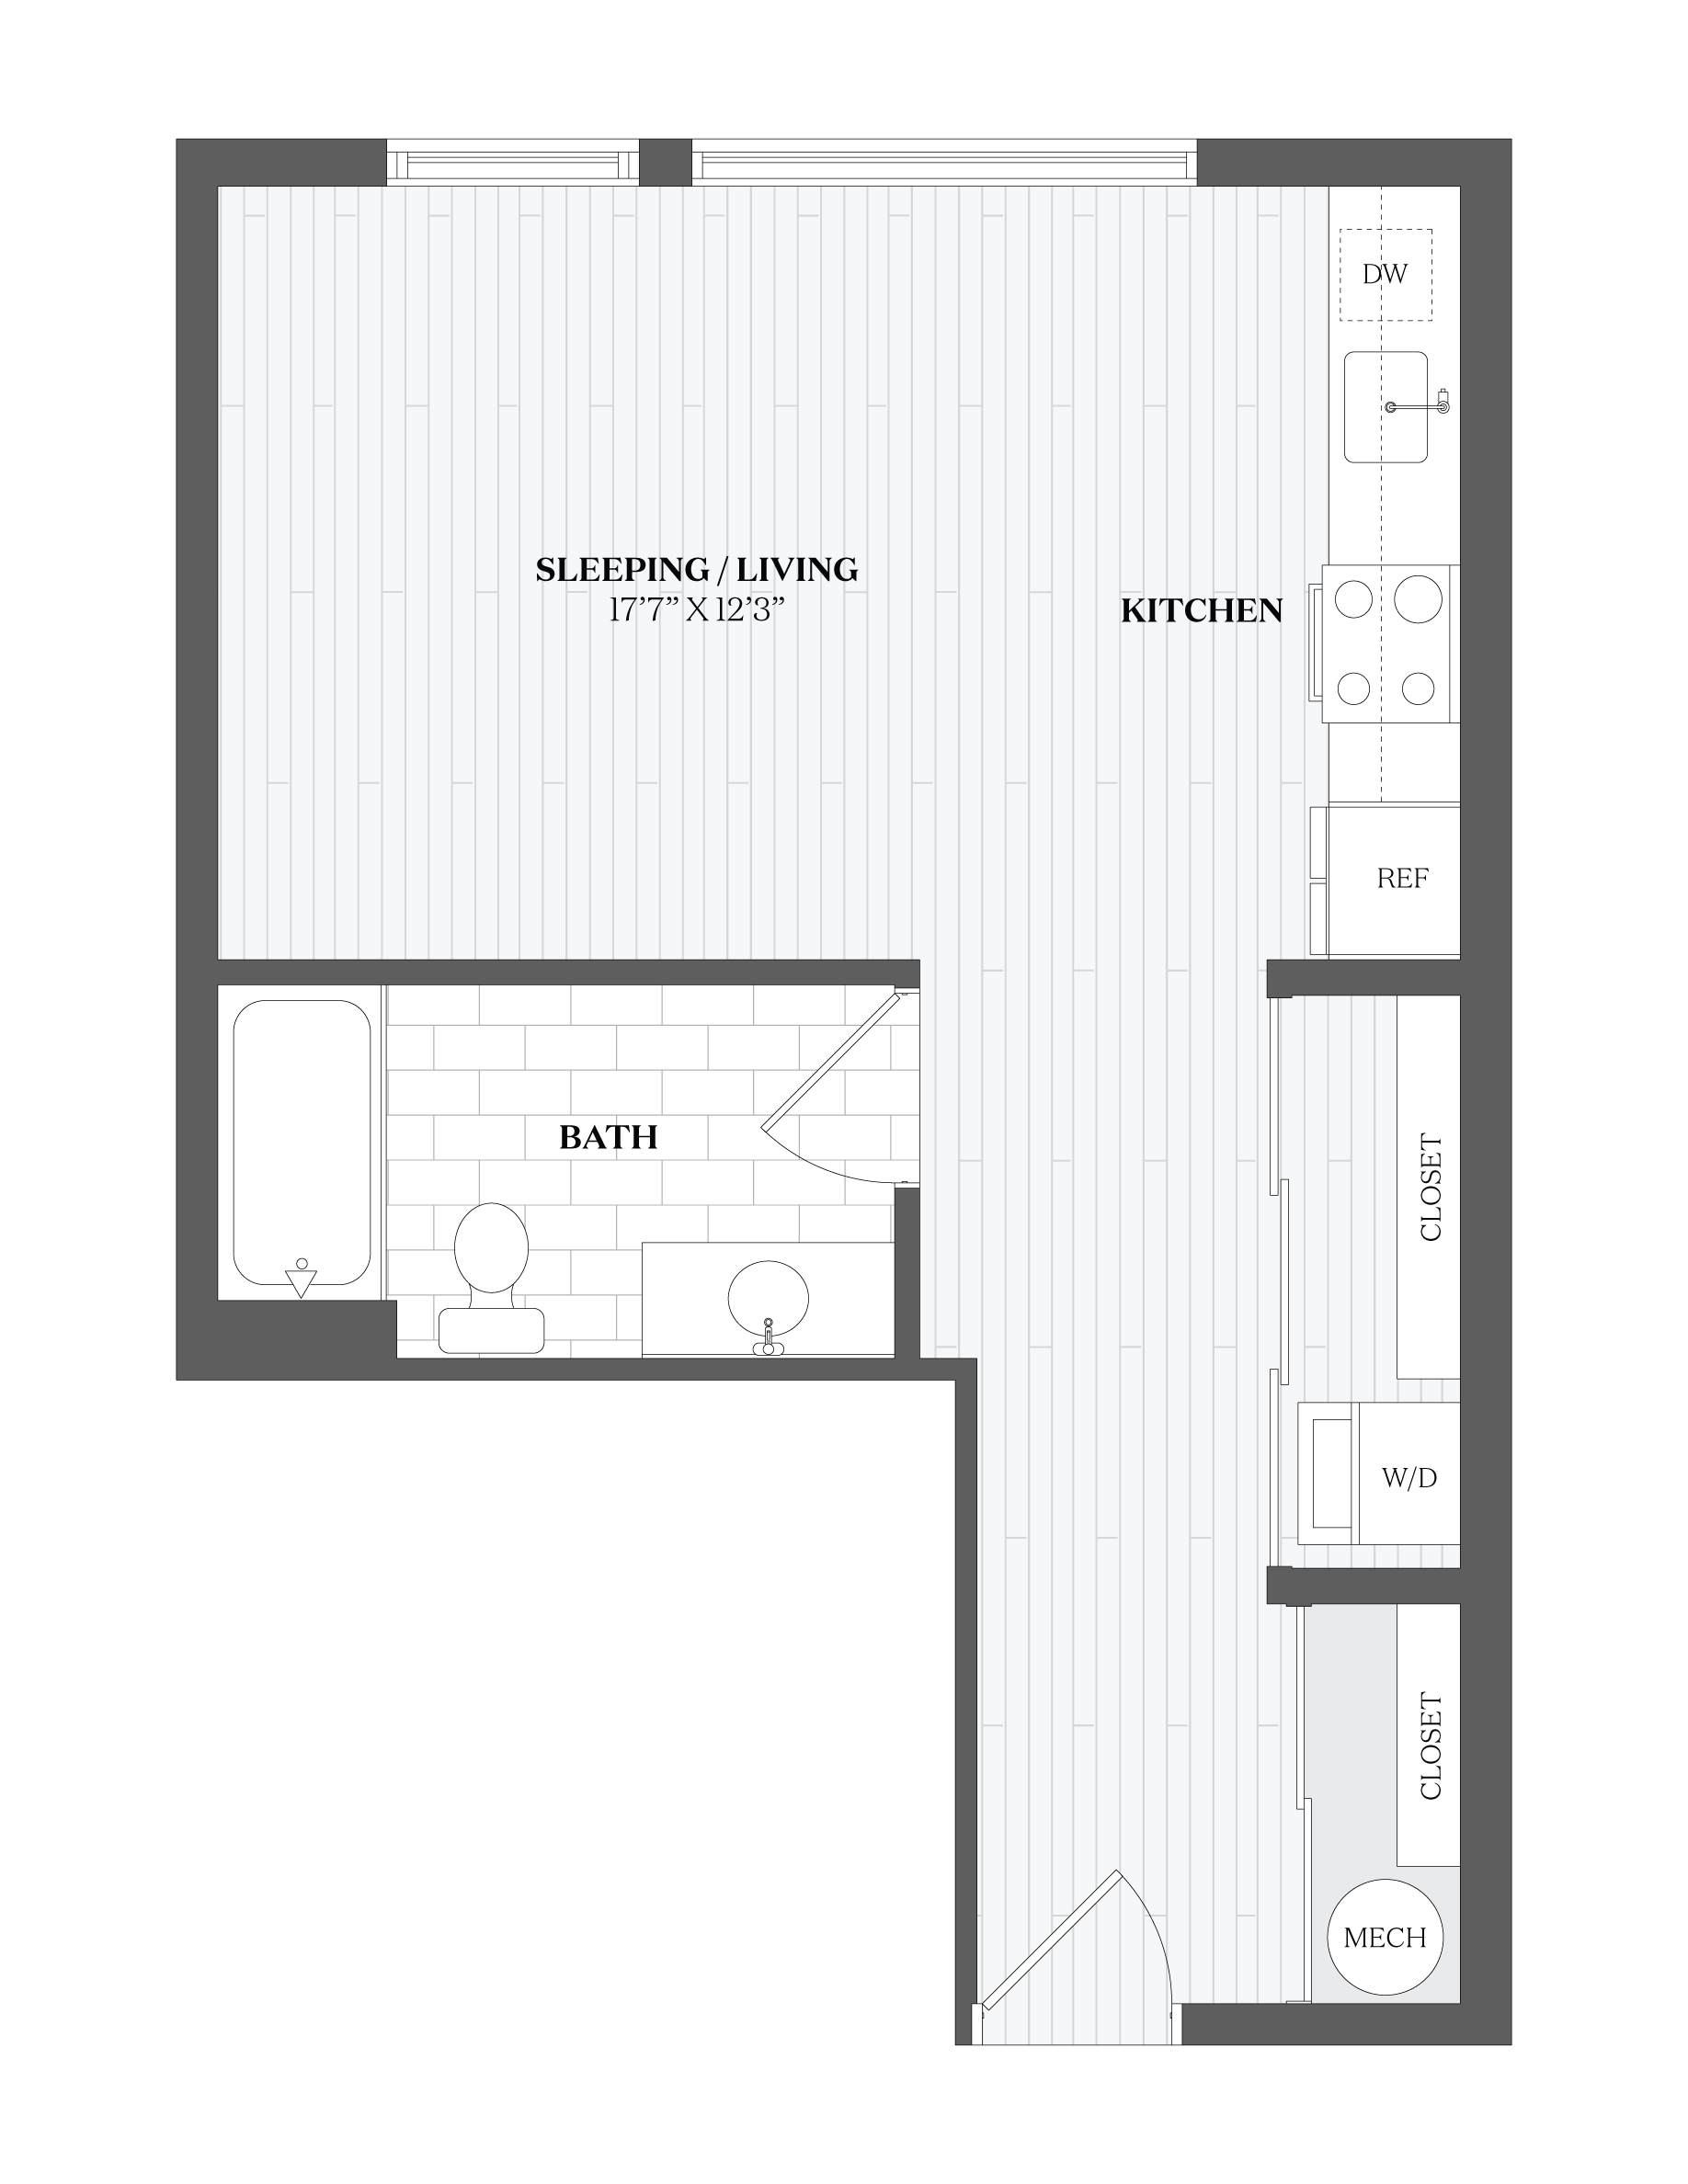 Floorplan Image 